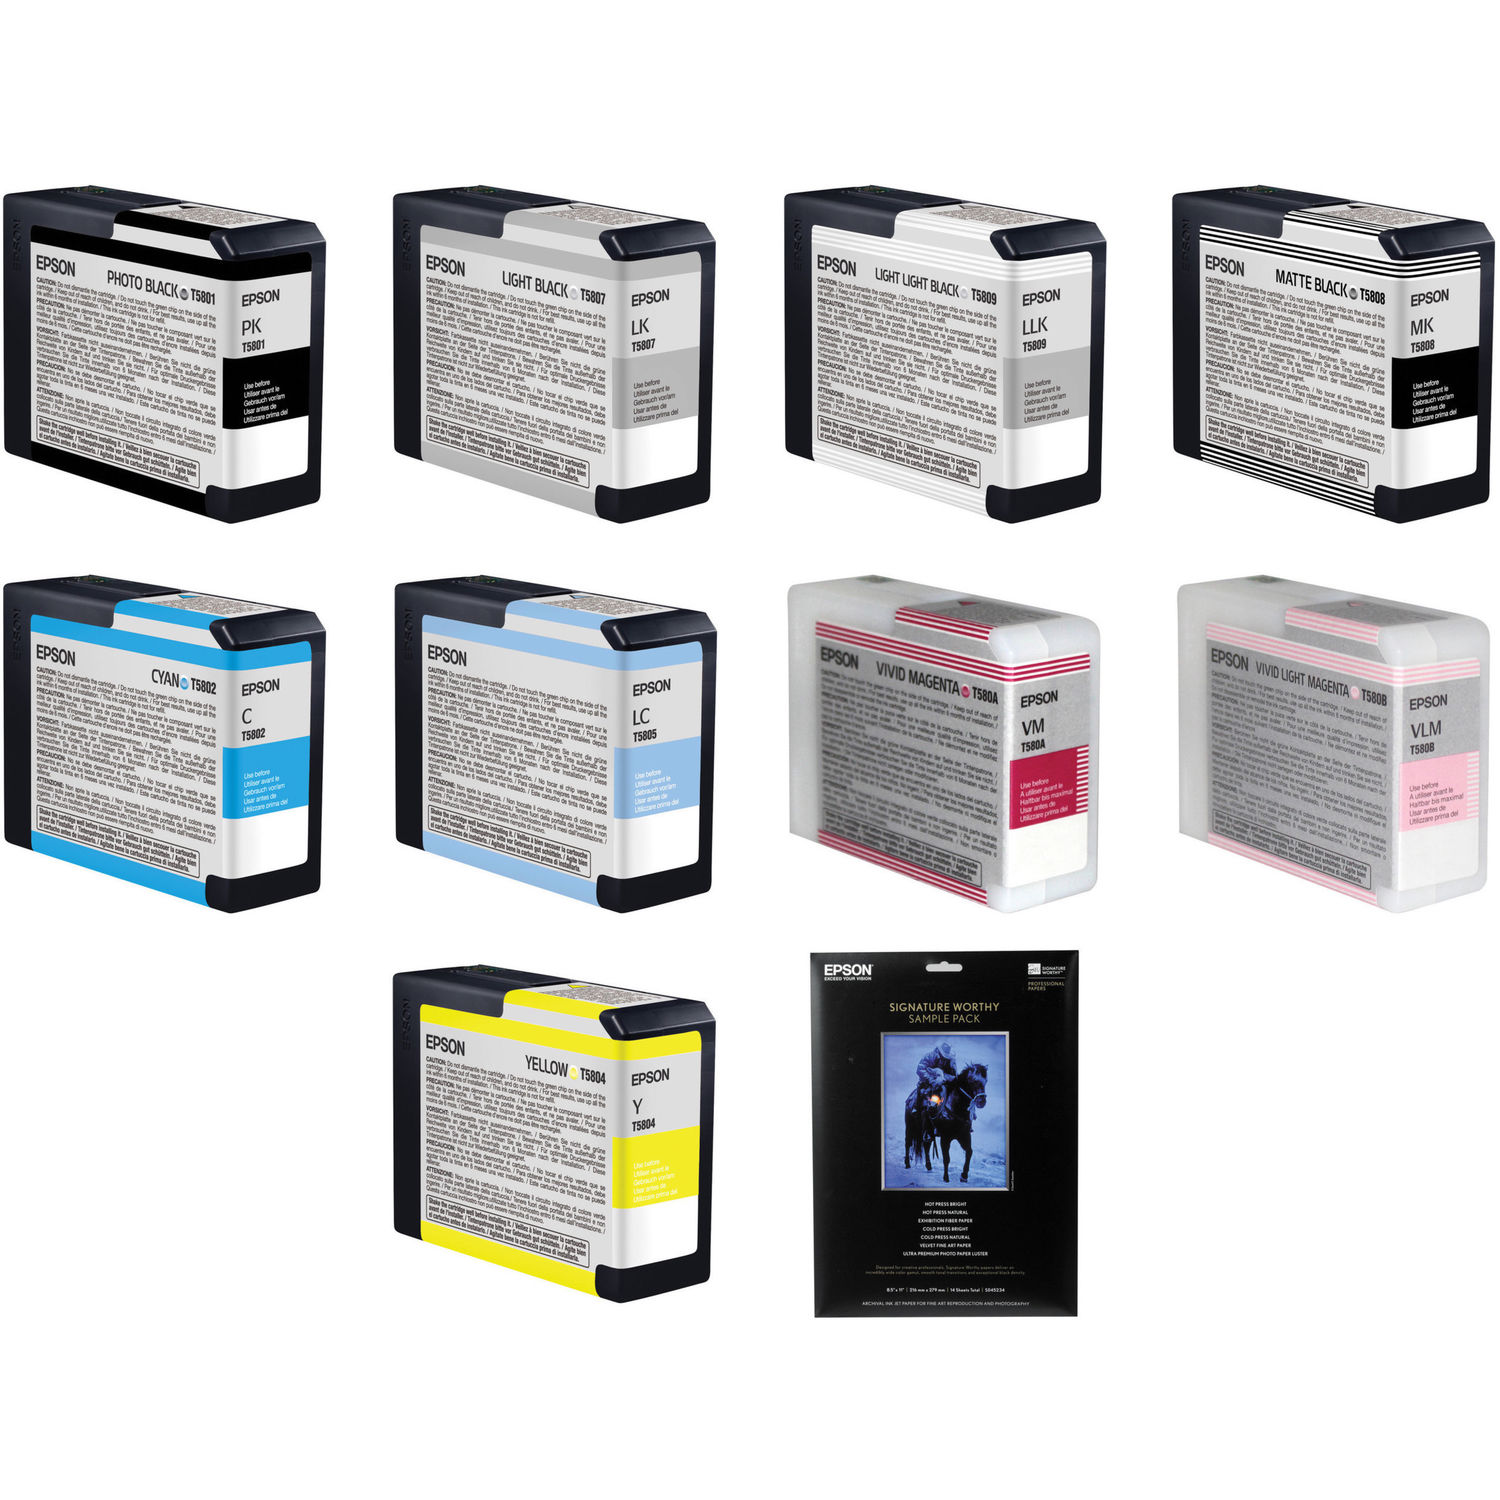 Cartuchos de Tinta Epson y Papel para La Impresora de Inyección de Tinta Stylus Pro 3880